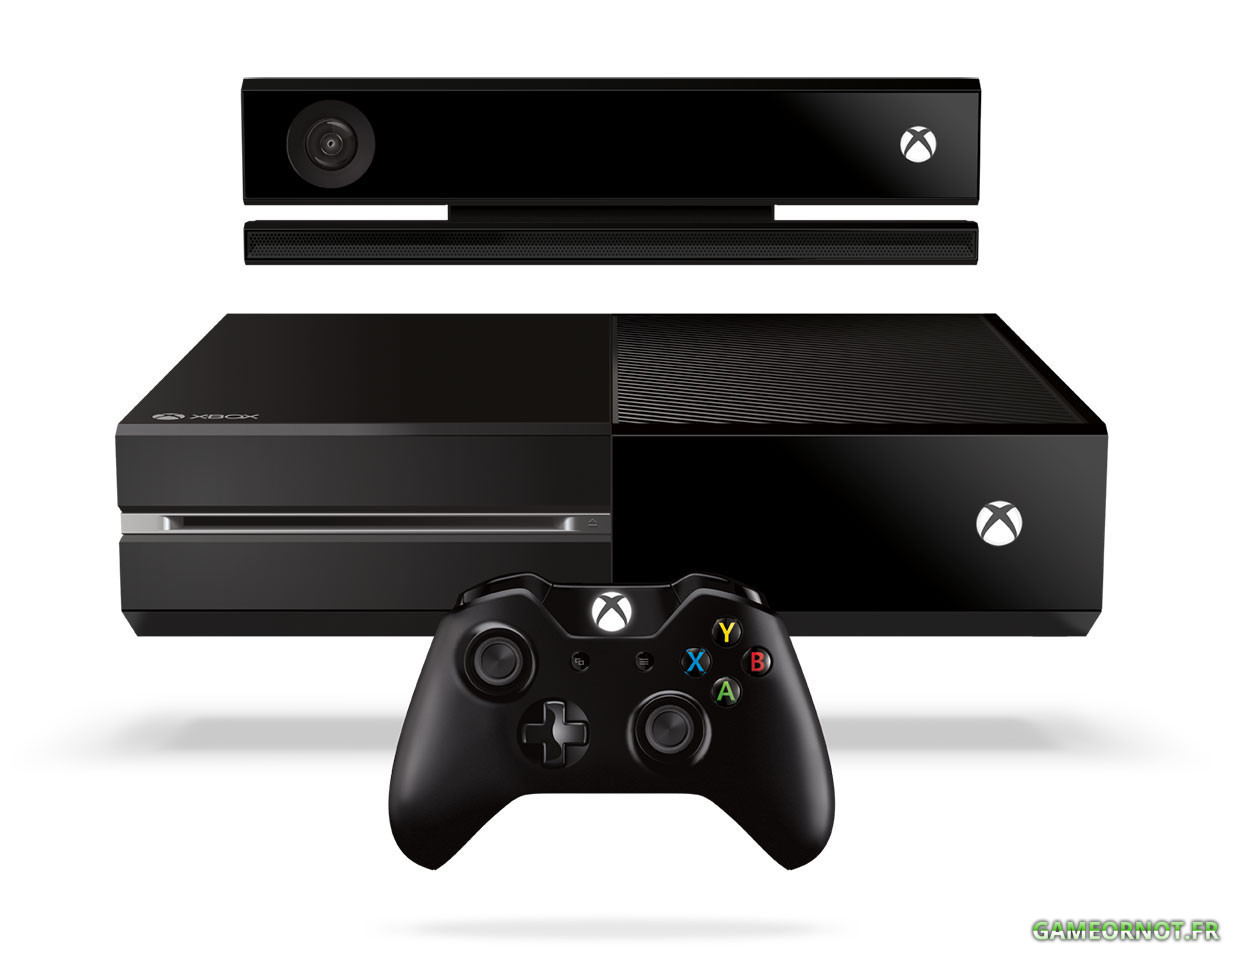 Entretiens Xbox One - On en parle avec nos confrères